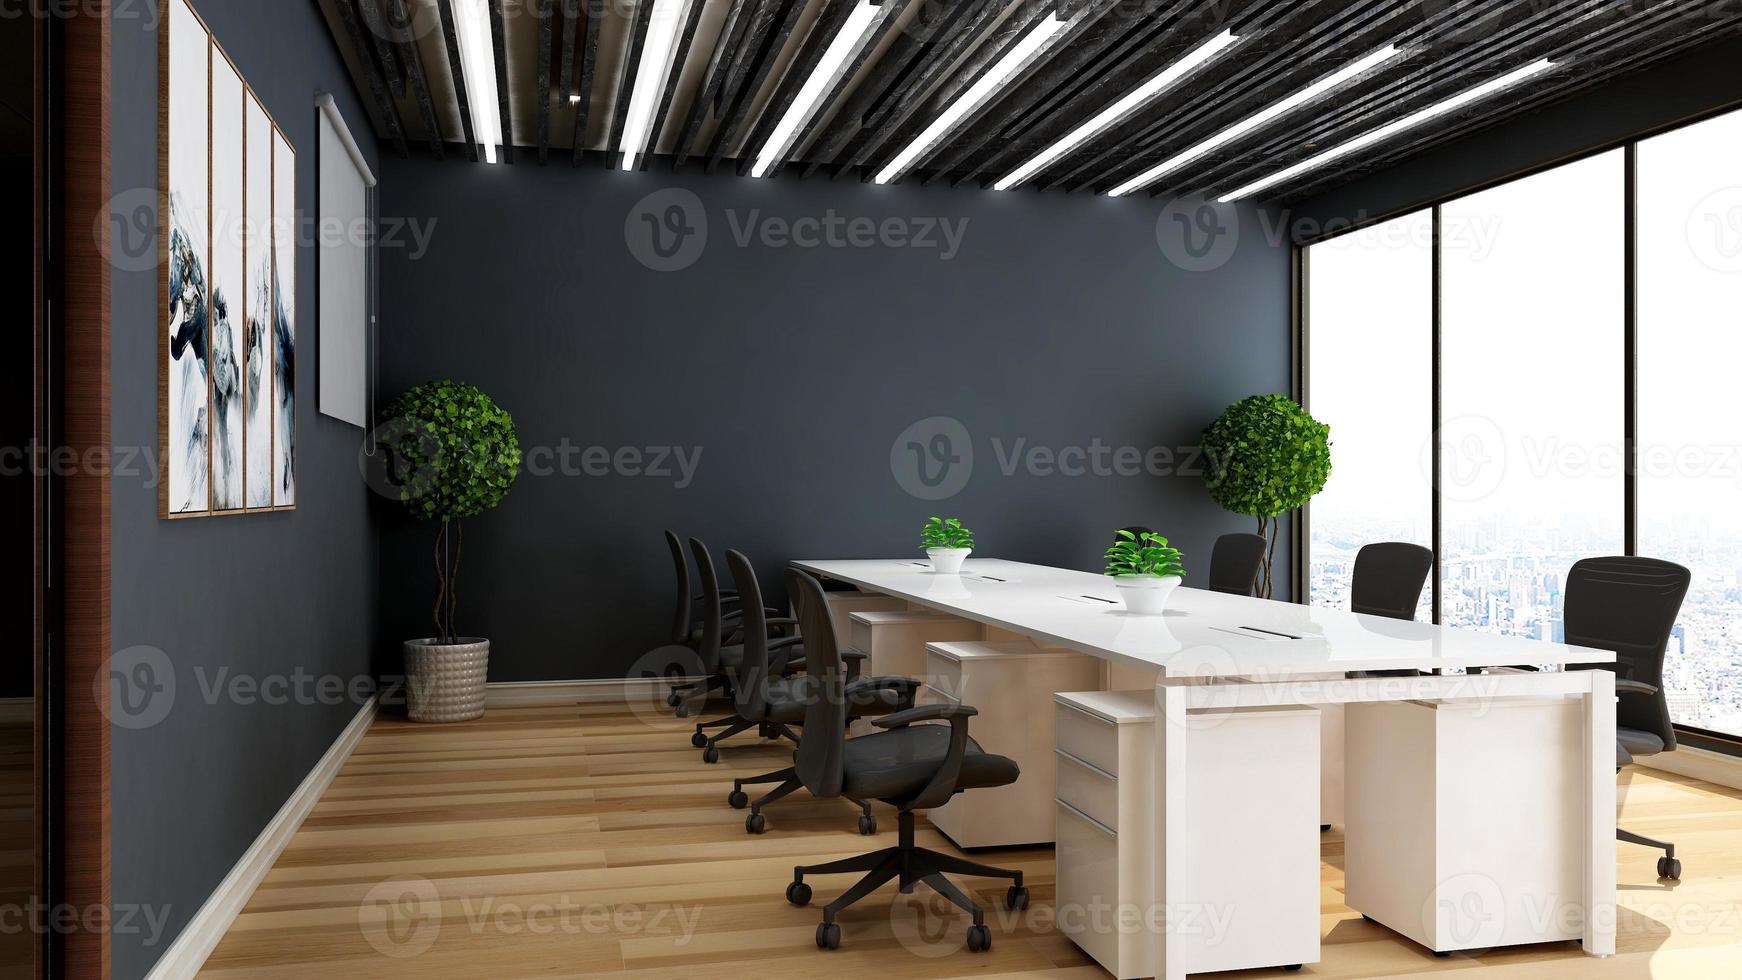 3d render kantoorontwerp - modern vergaderruimtemodel met zwart-wit concept foto